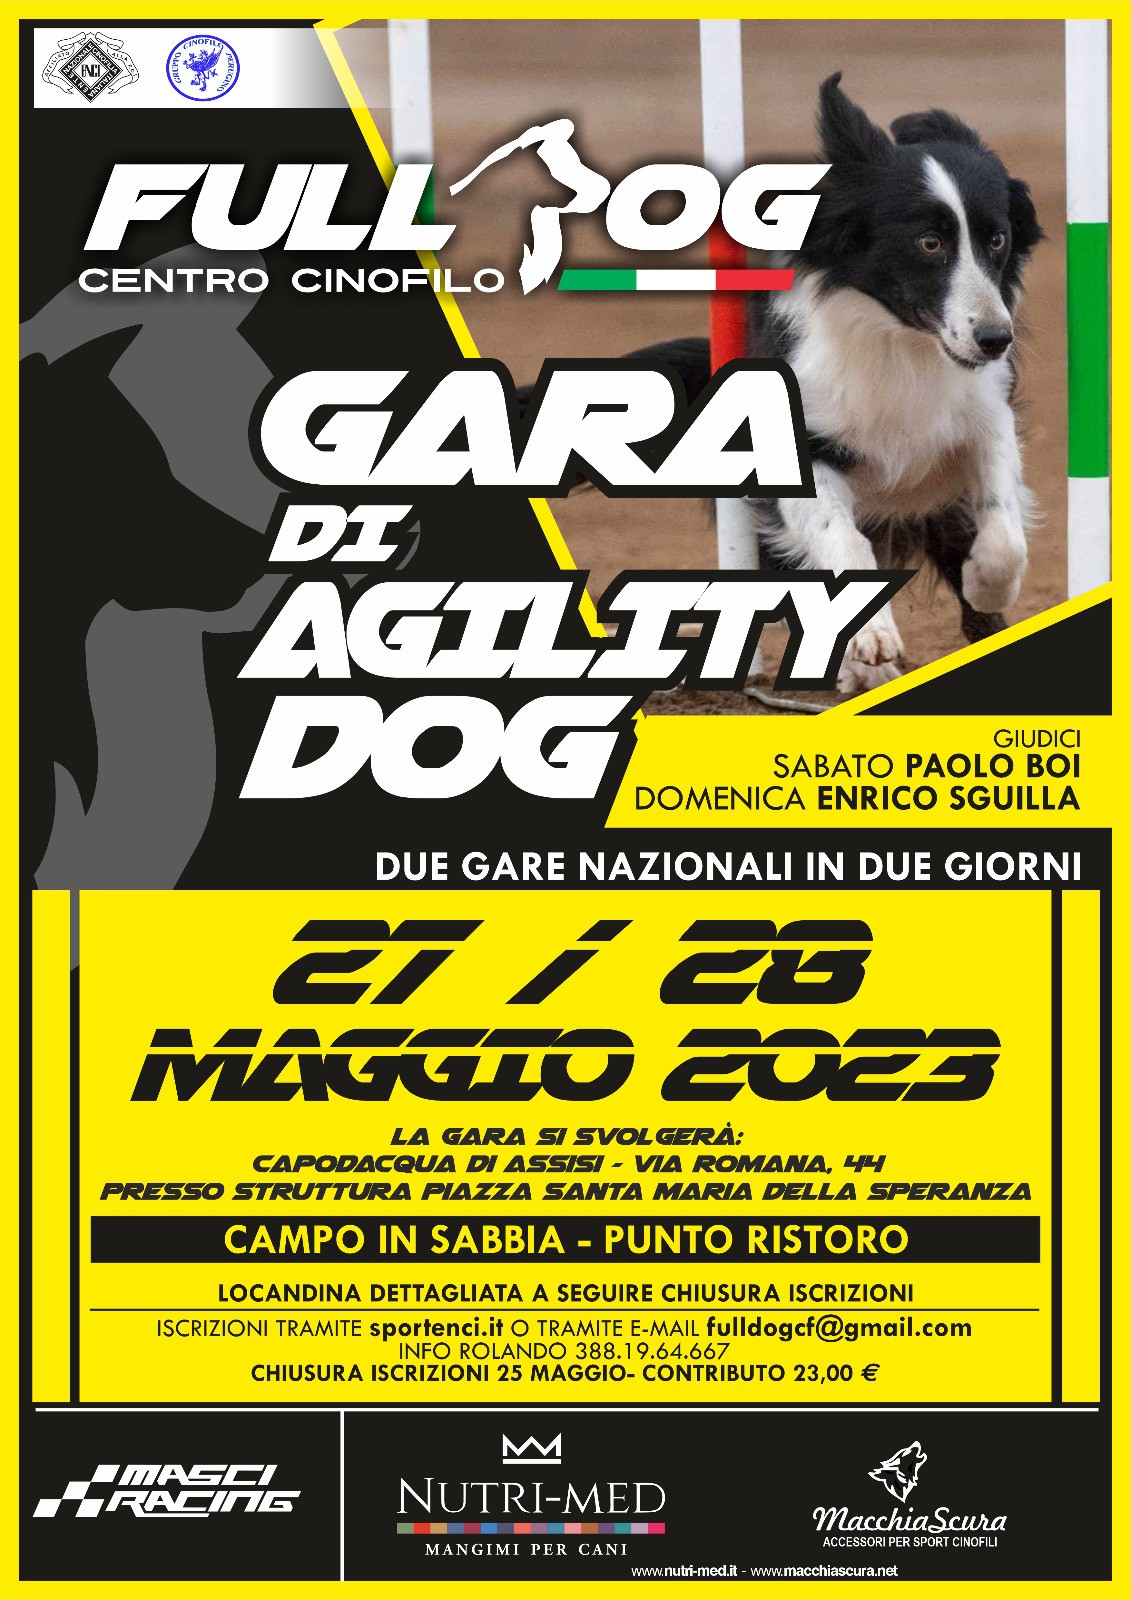 Gara agility dog  full dog 27 maggio 2023